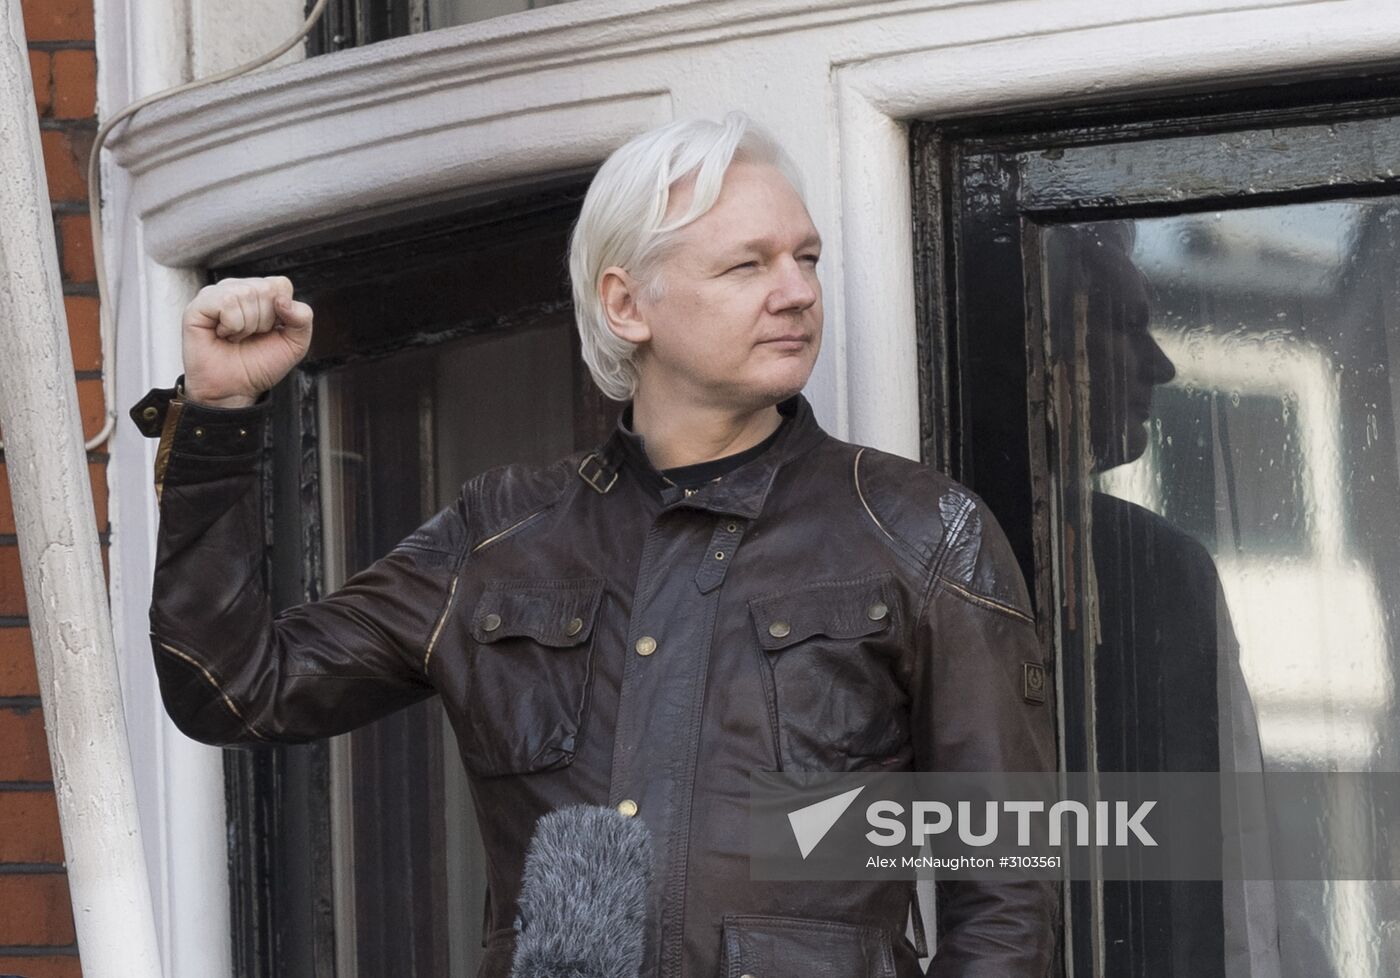 Sweden S Prosecutors Drop Investigation Into Assange Case Sputnik